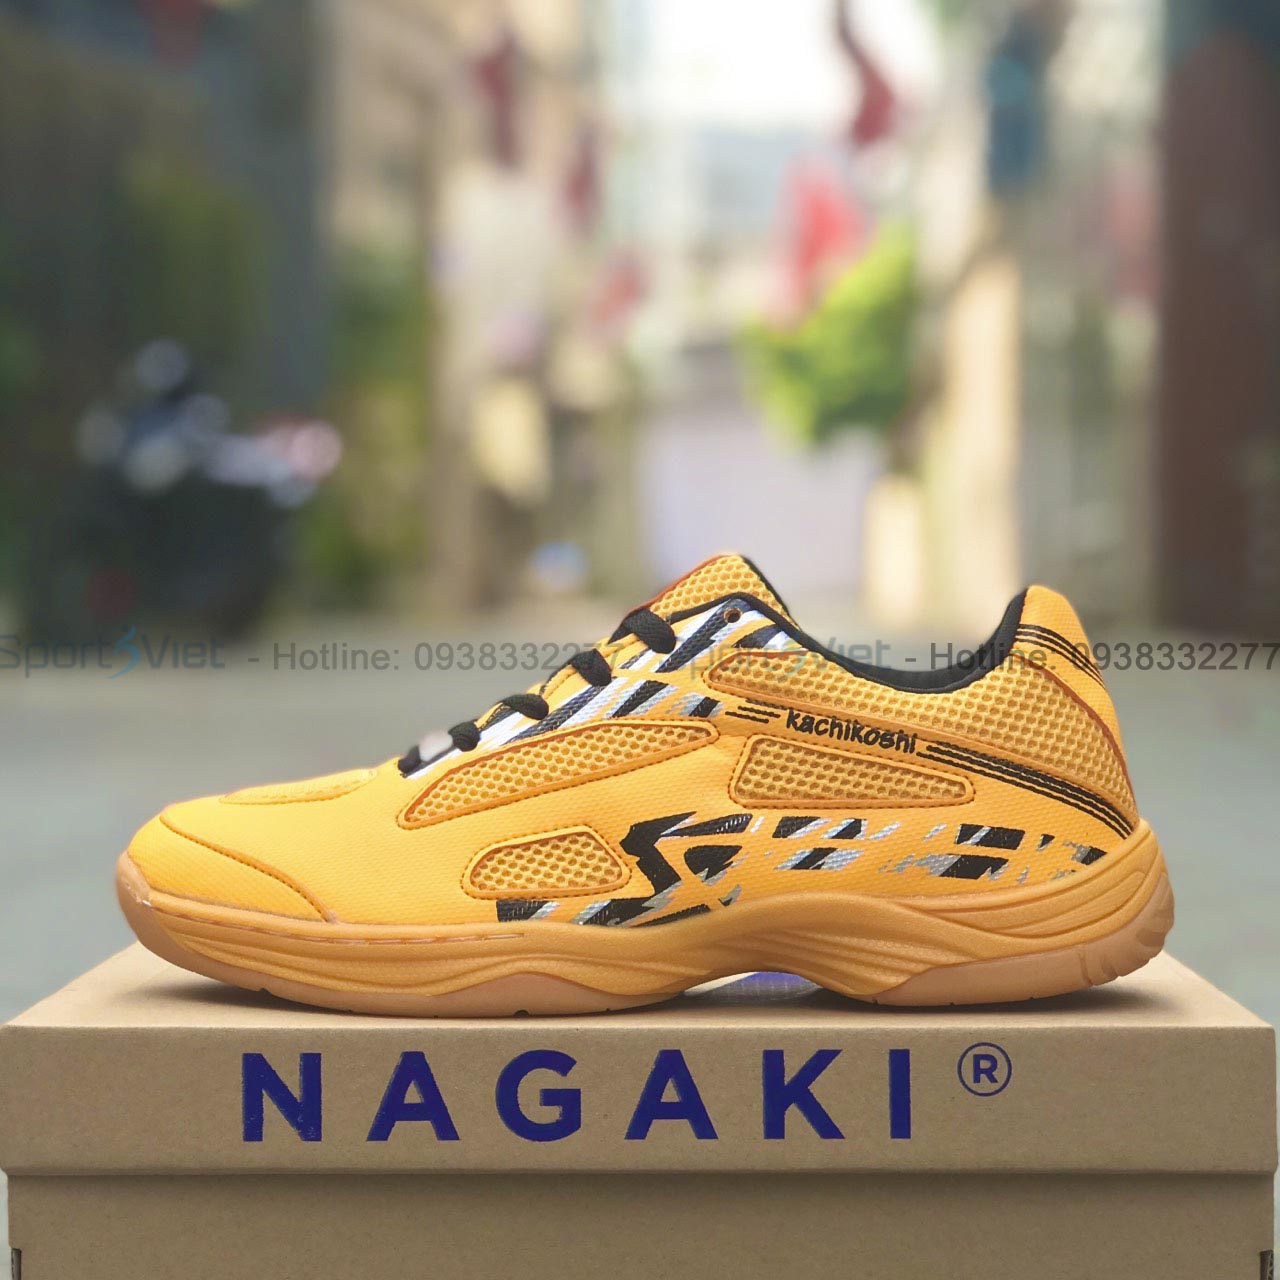 Giày cầu lông nam Nagaki - Akira mẫu mới, đế kếp 2 lớp bám sàn tốt